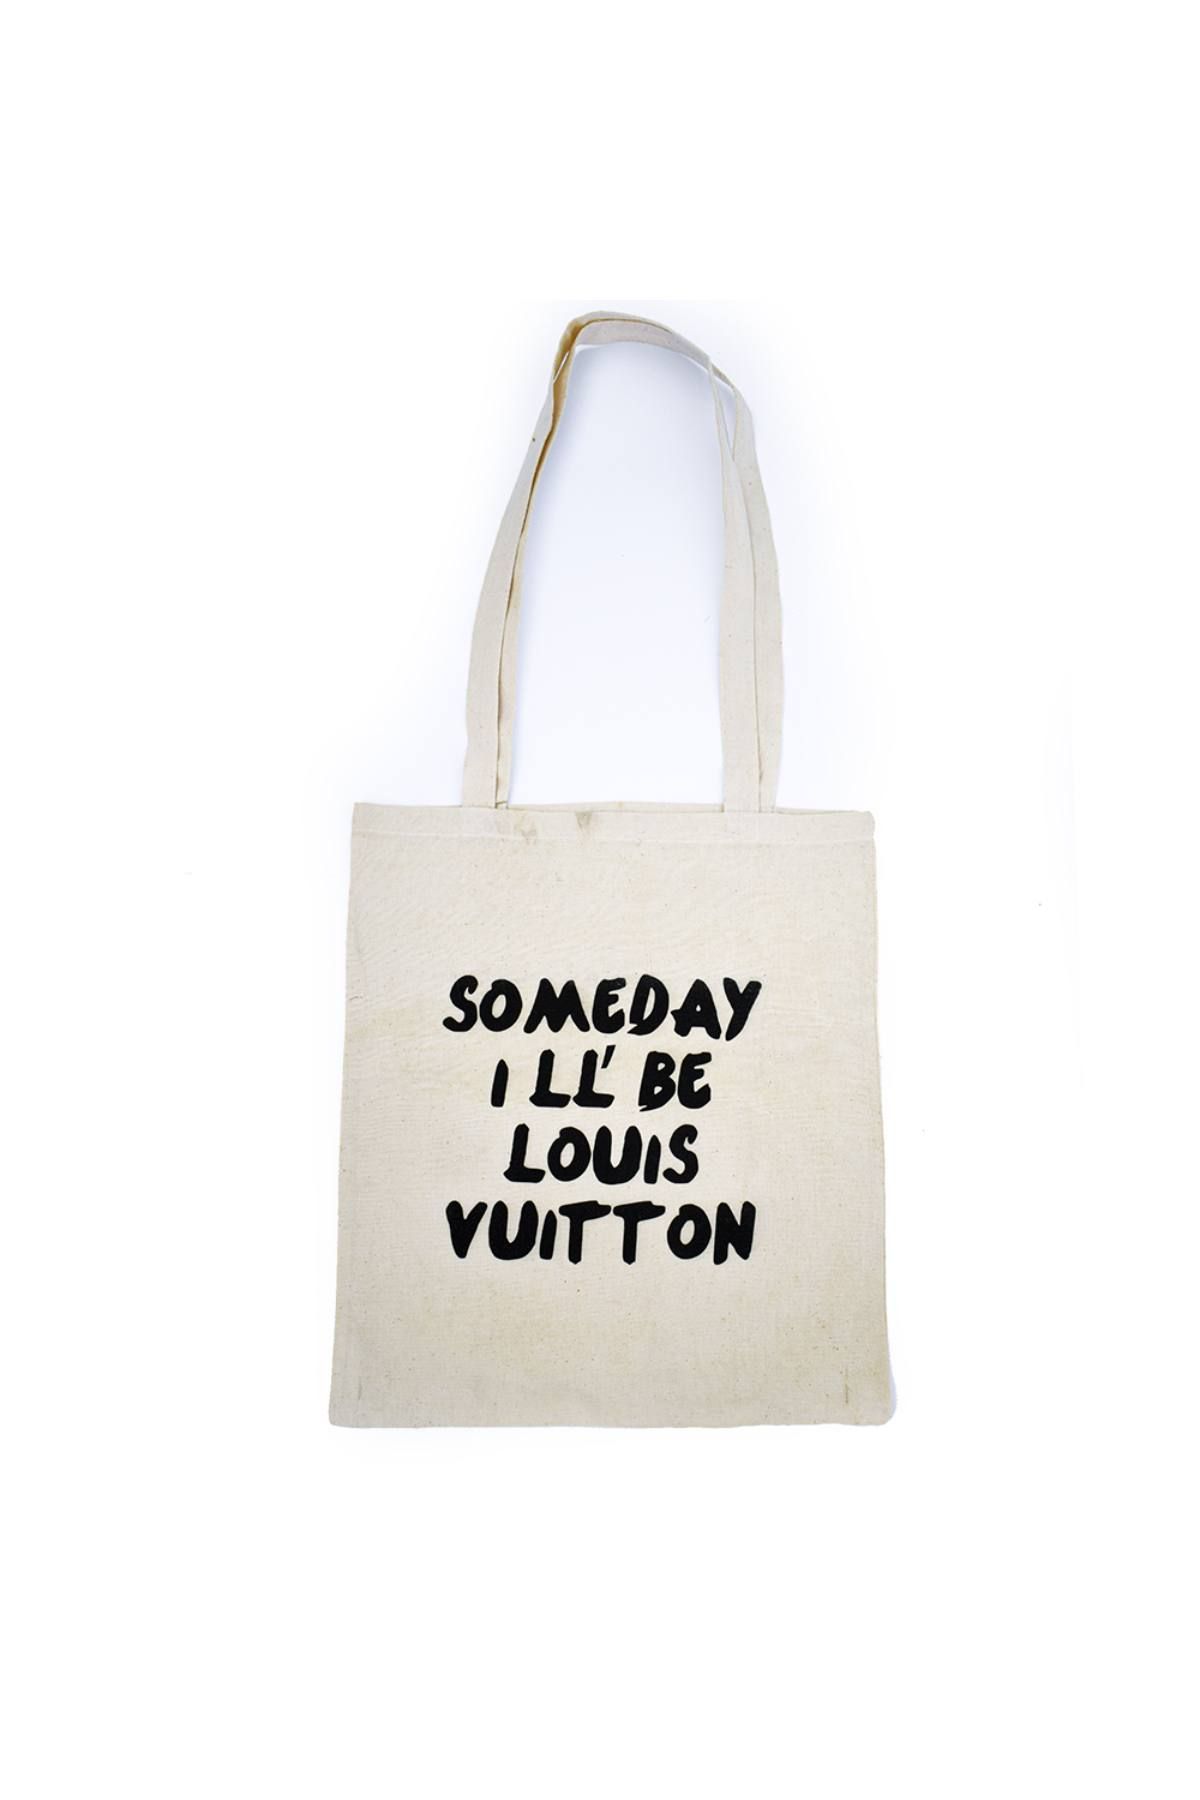 Louis Vuitton Boétie Canvas Handbag